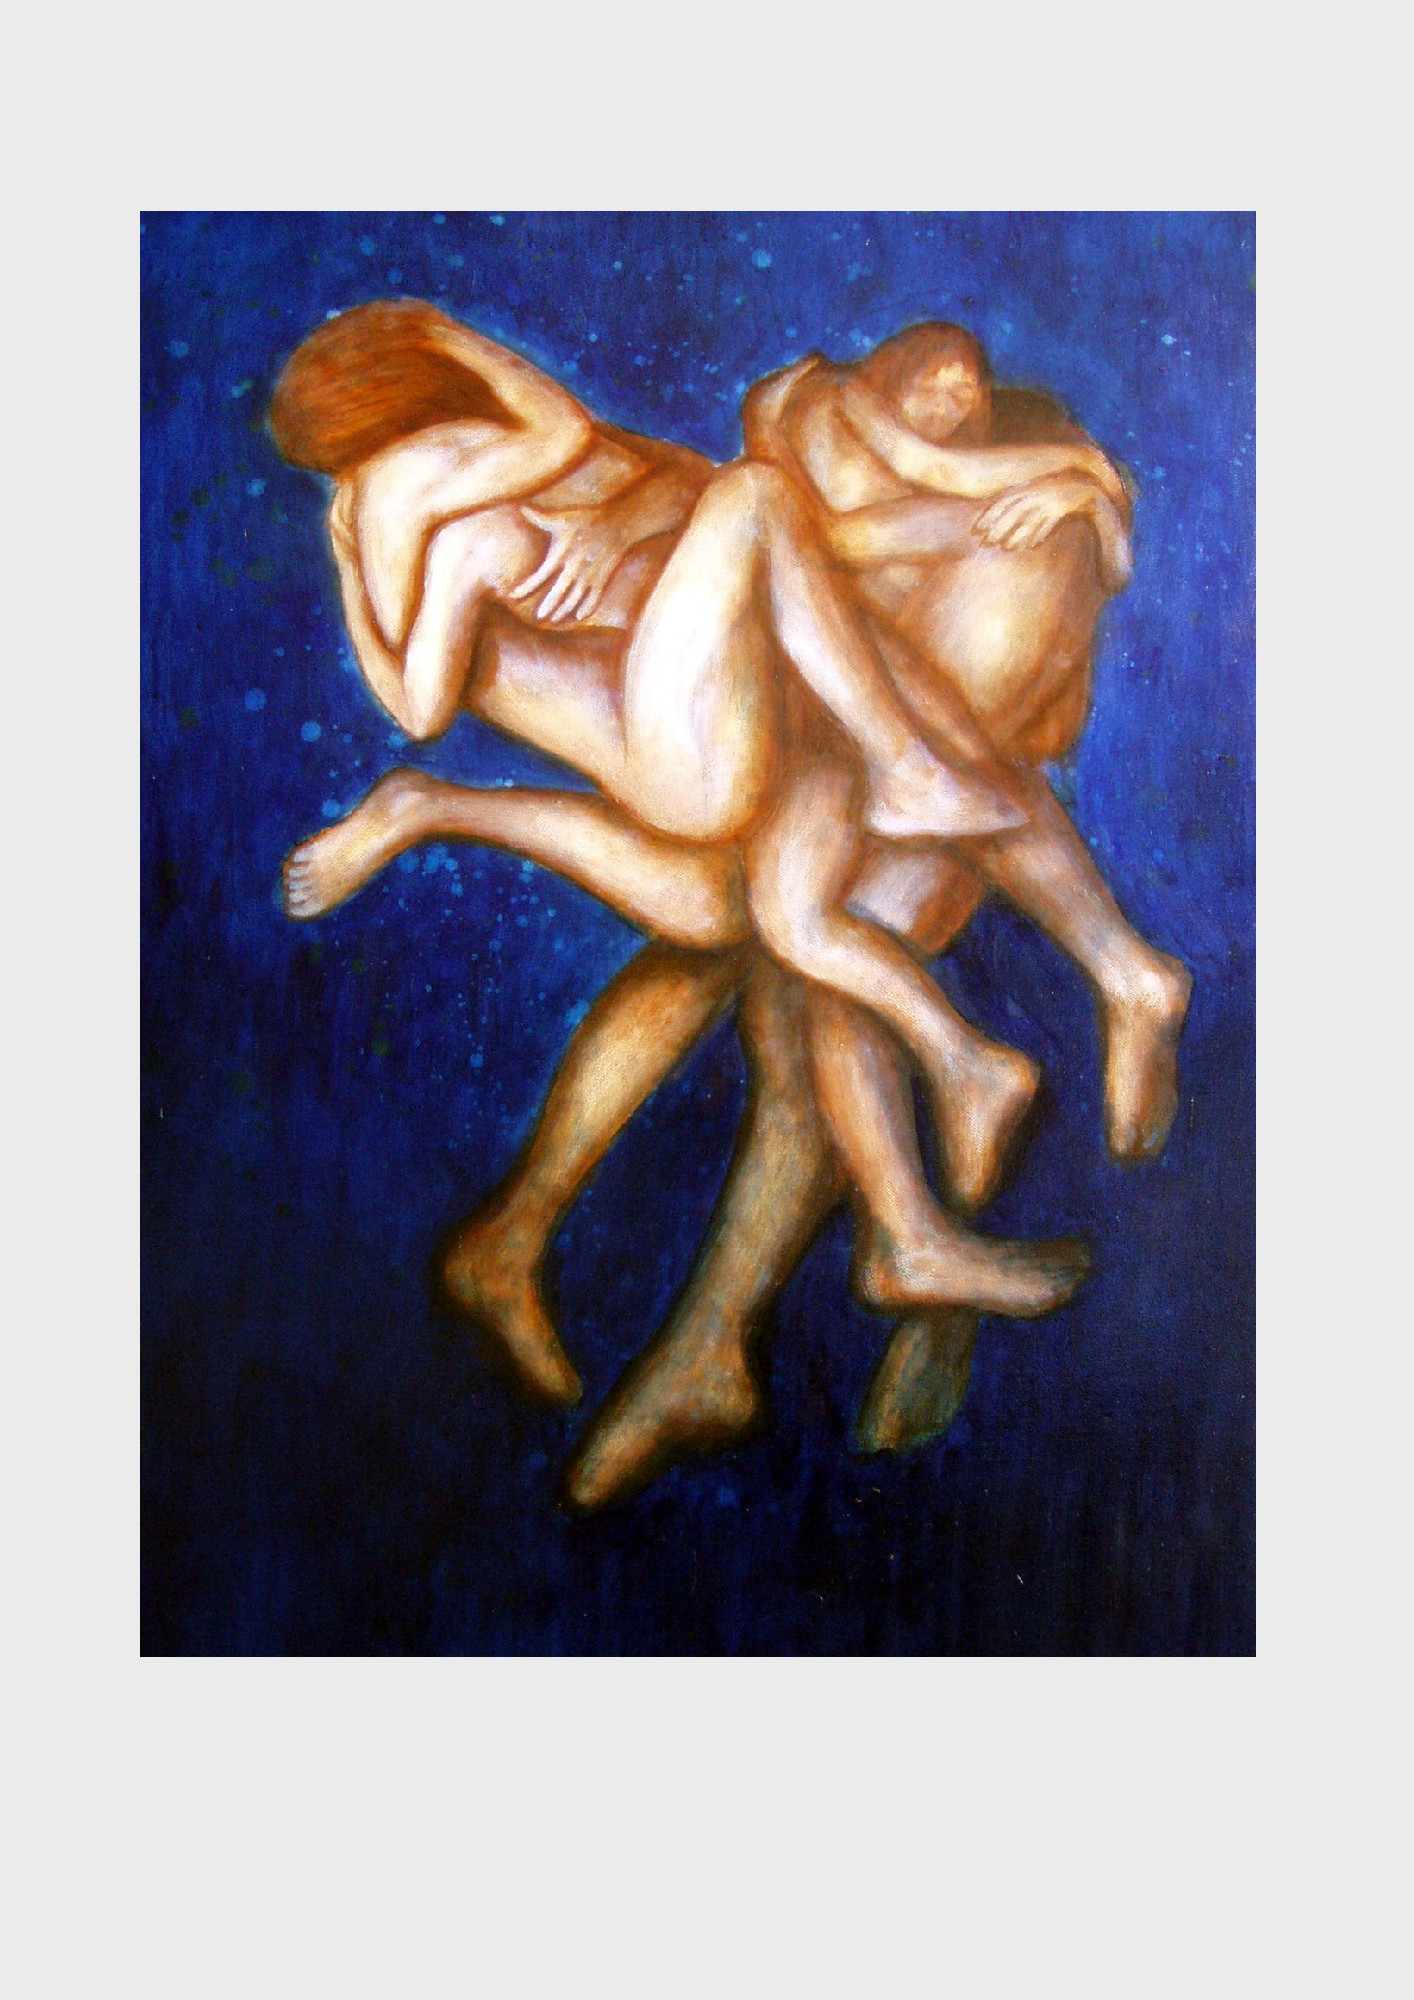 Liebe. Nimm meine Seele. Homage an den Film: The soul keeper. Ein Liebespaar schwebt vor einem blauen Sternehimmel, vergessen, versunken, vereint. Romantisches Motiv auf Leinwand, gemalt von Dorothea Koch.